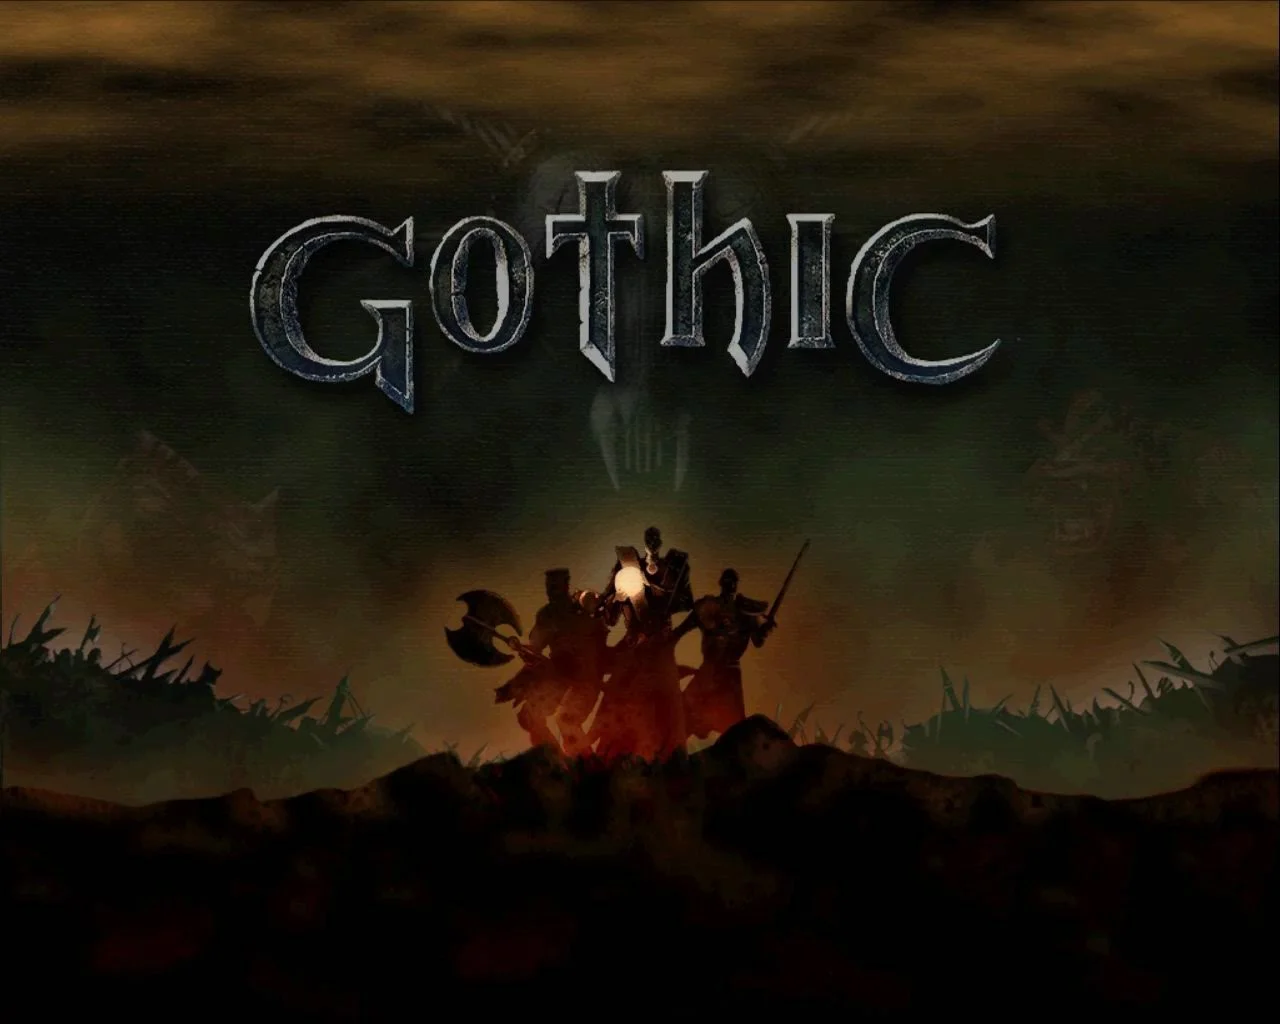 15 марта 2001 года в Германии вышла первая Gothic — культовая ролевая игра Piranha Bytes. По случаю ее 20-летнего юбилея рассказываем, чем она так полюбилась игрокам. И напоминаем о нашем тексте, посвященном лучшим играм студии.